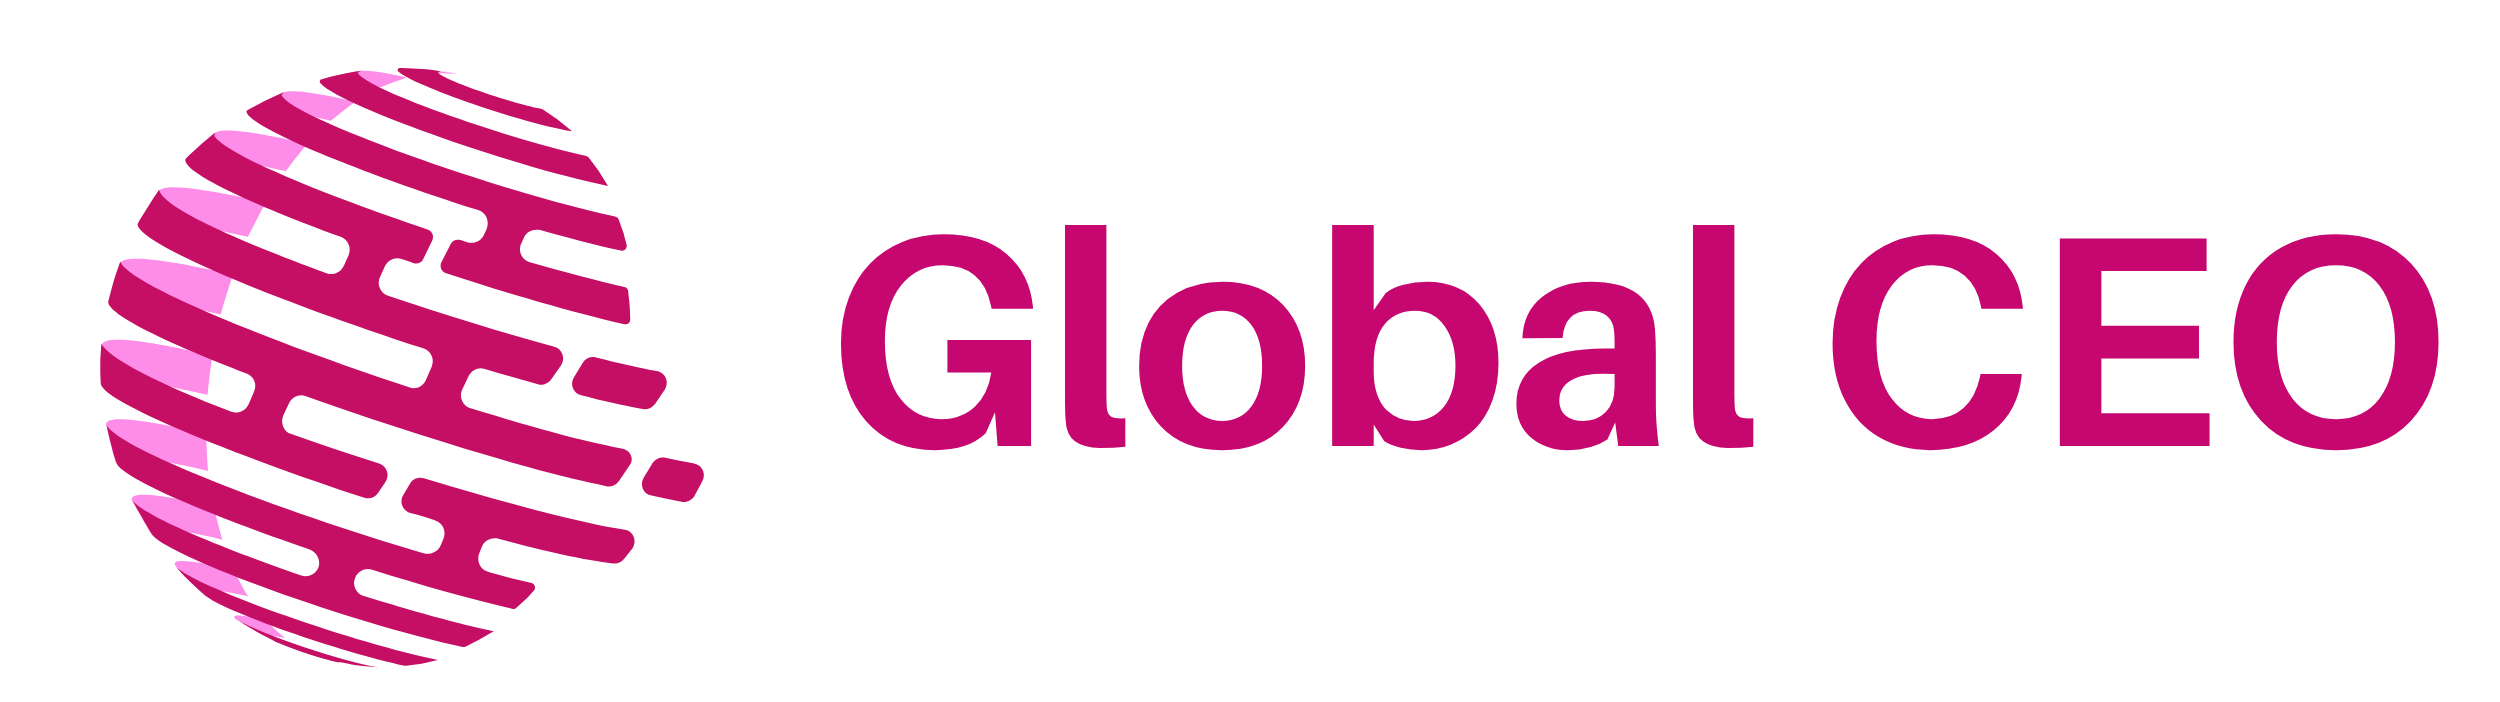 pink-globalceoBusiness-2